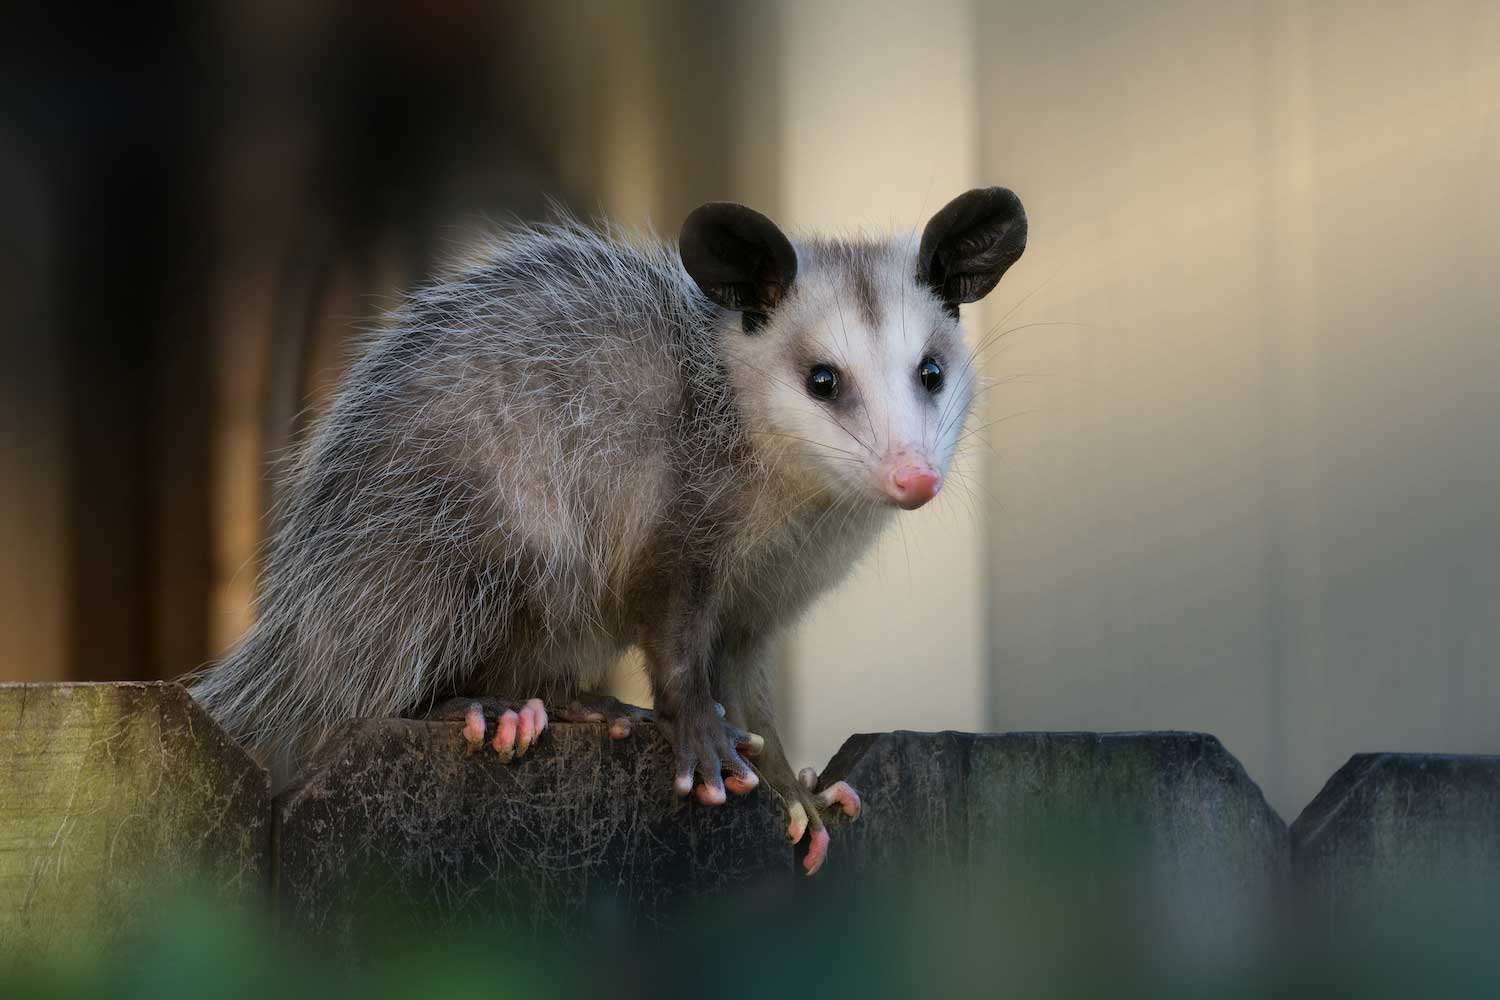 An opossum atop a wooden fence.